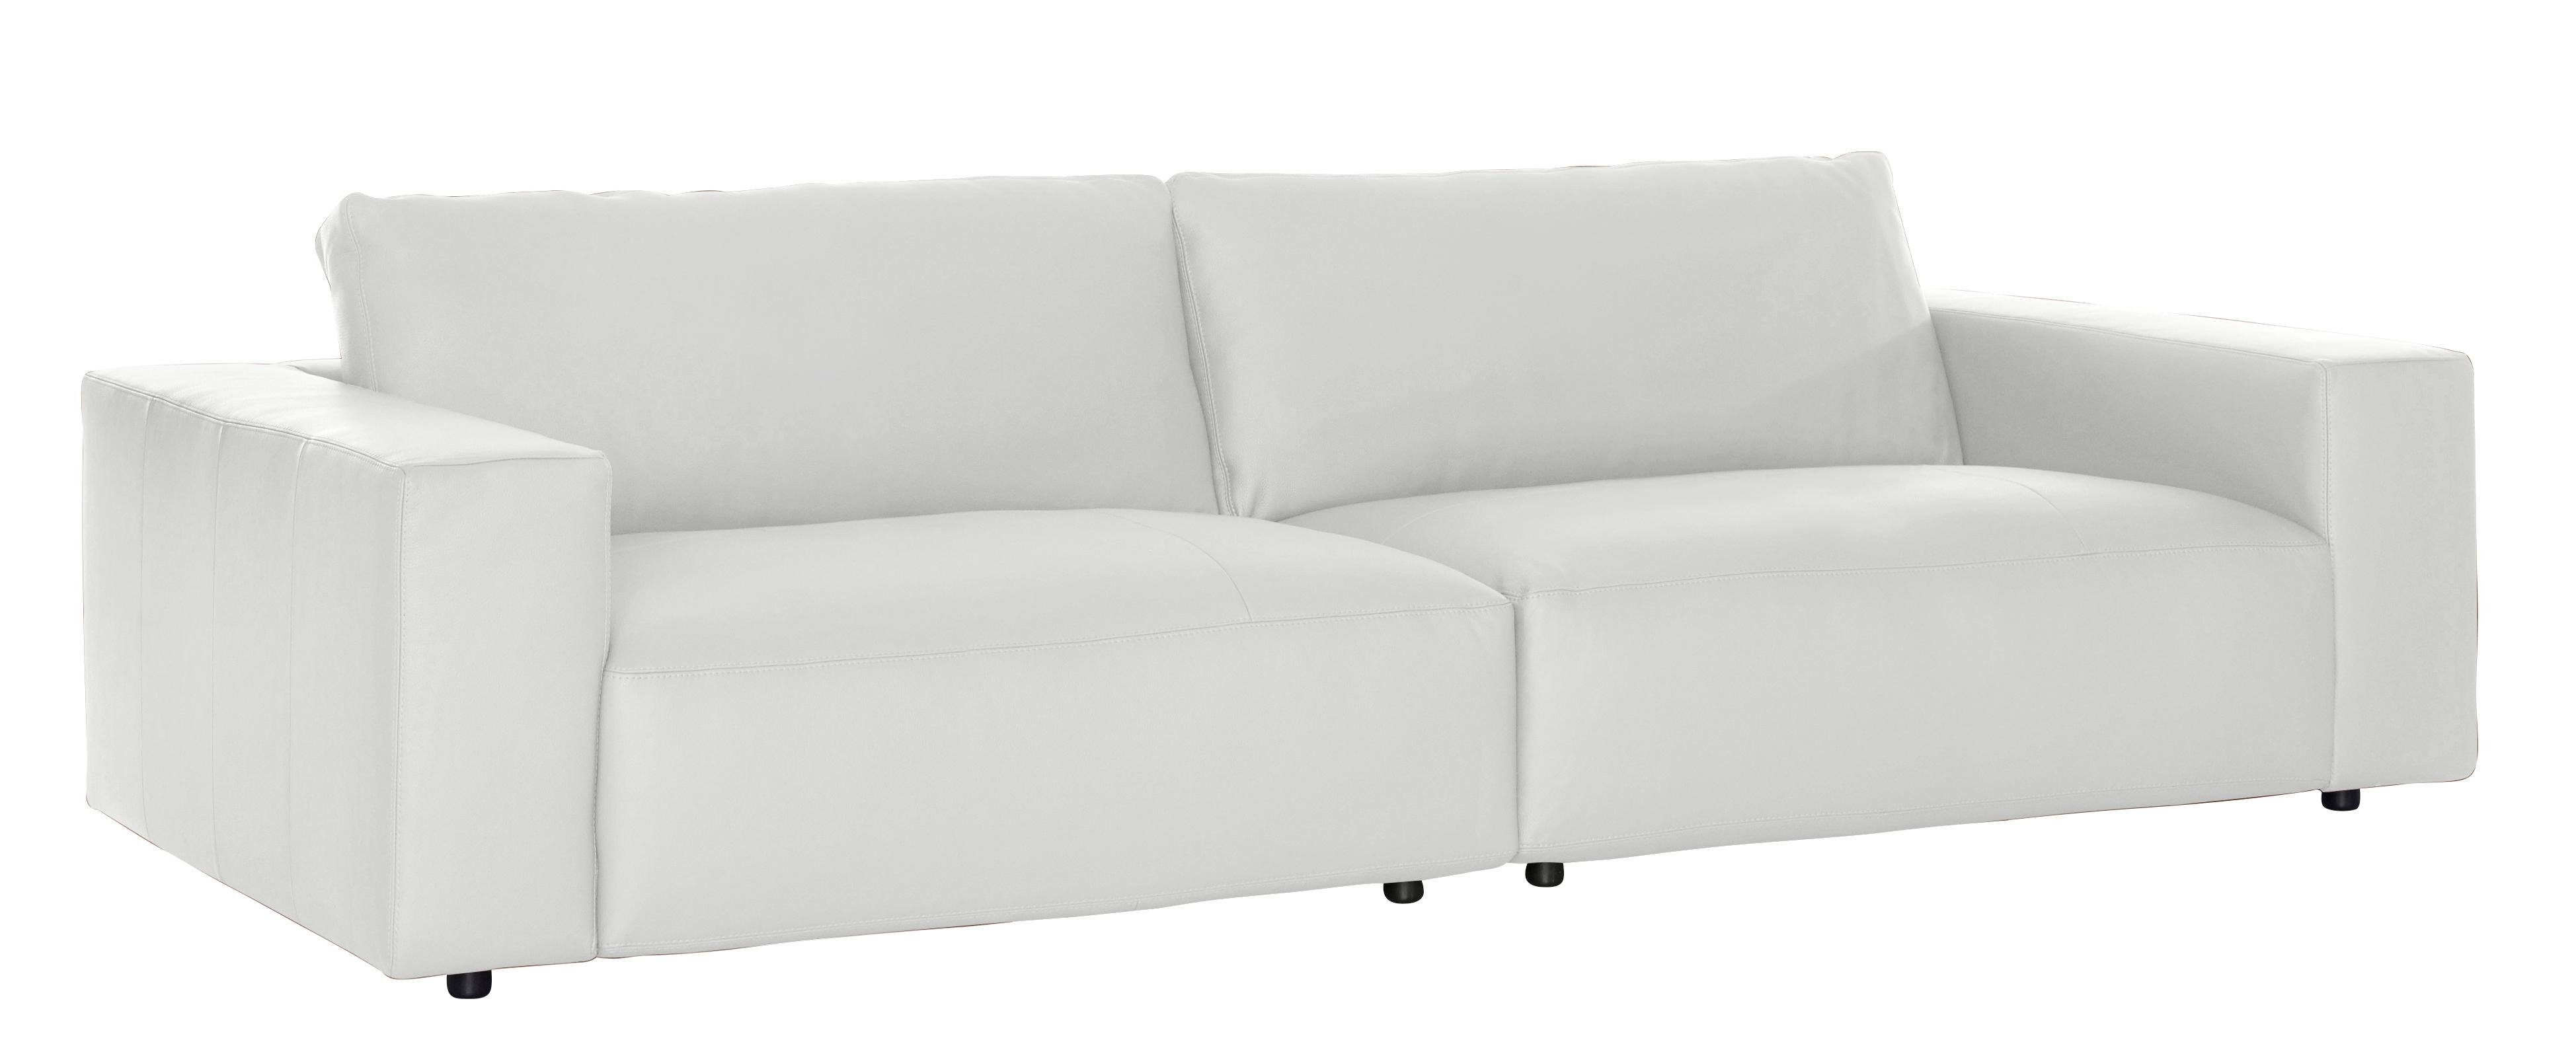 GALLERY M by 3-Sitzer in vielen Big-Sofa 4 branded und LUCIA, Qualitäten Musterring unterschiedlichen Nähten